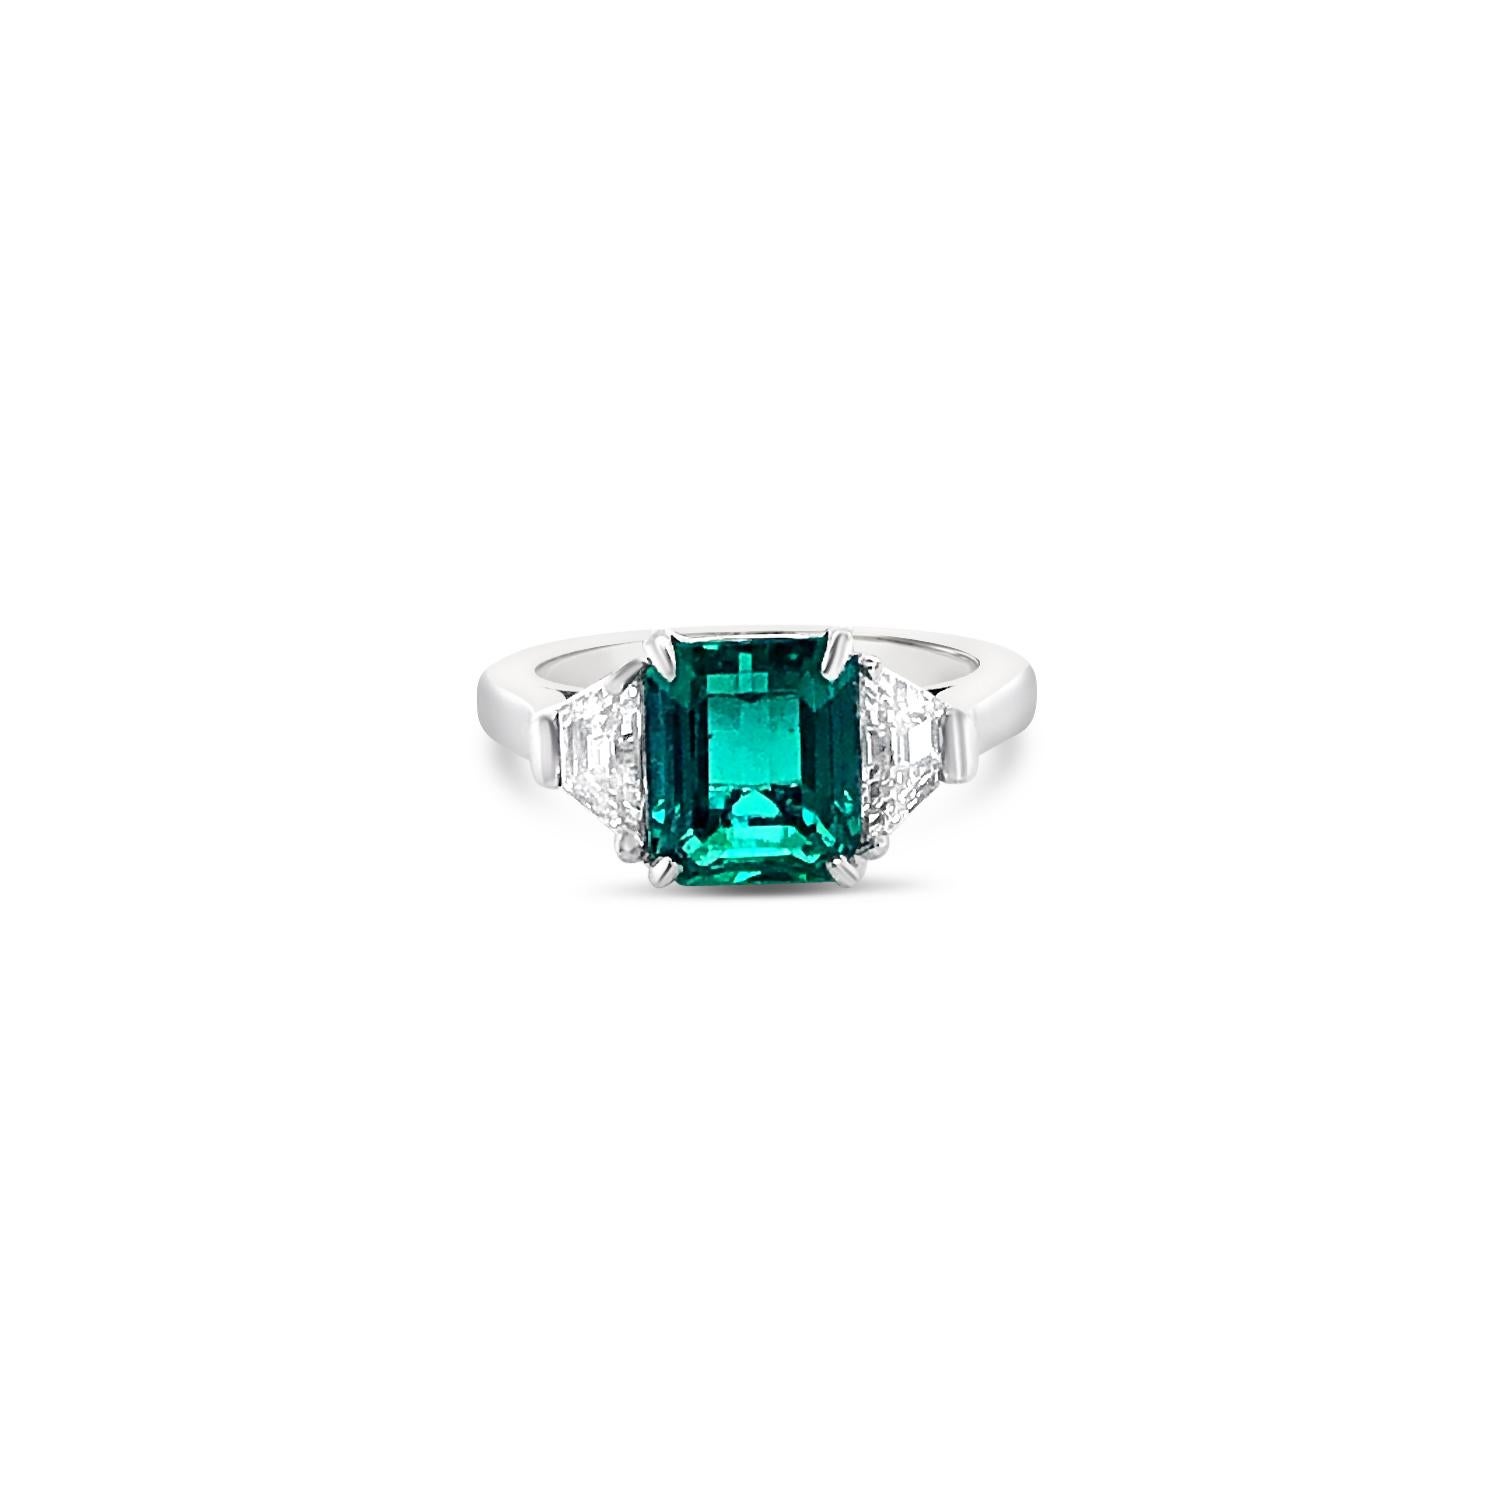 Emerald Cut 2.72 Carat Emerald and Diamond Ring in Platinum